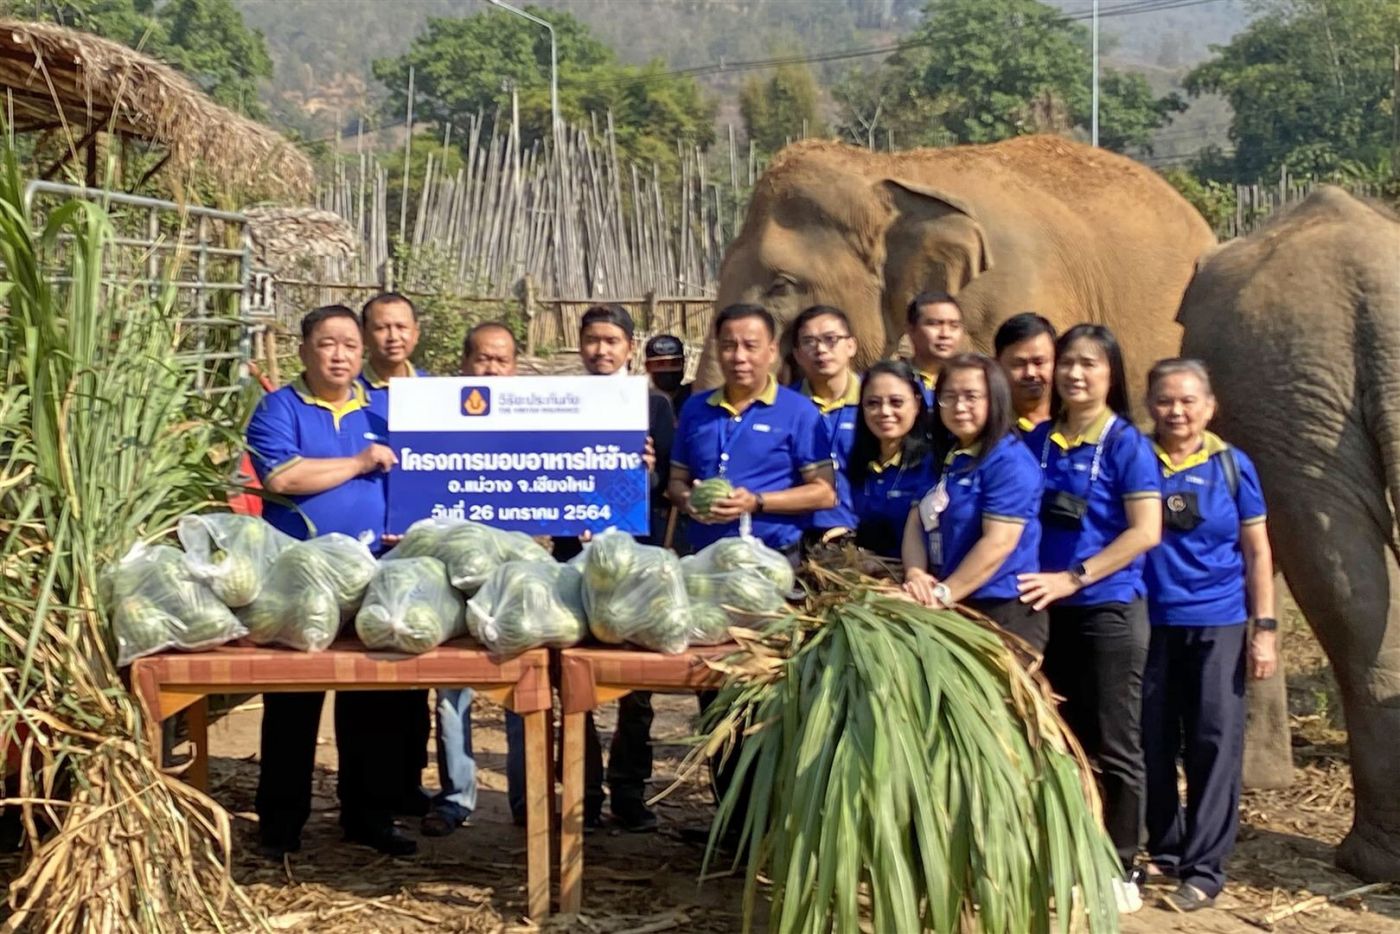 วิริยะประกันภัย ร่วมสนับสนุนอาหารช้าง ศูนย์อนุรักษ์ช้างไทย เชียงใหม่